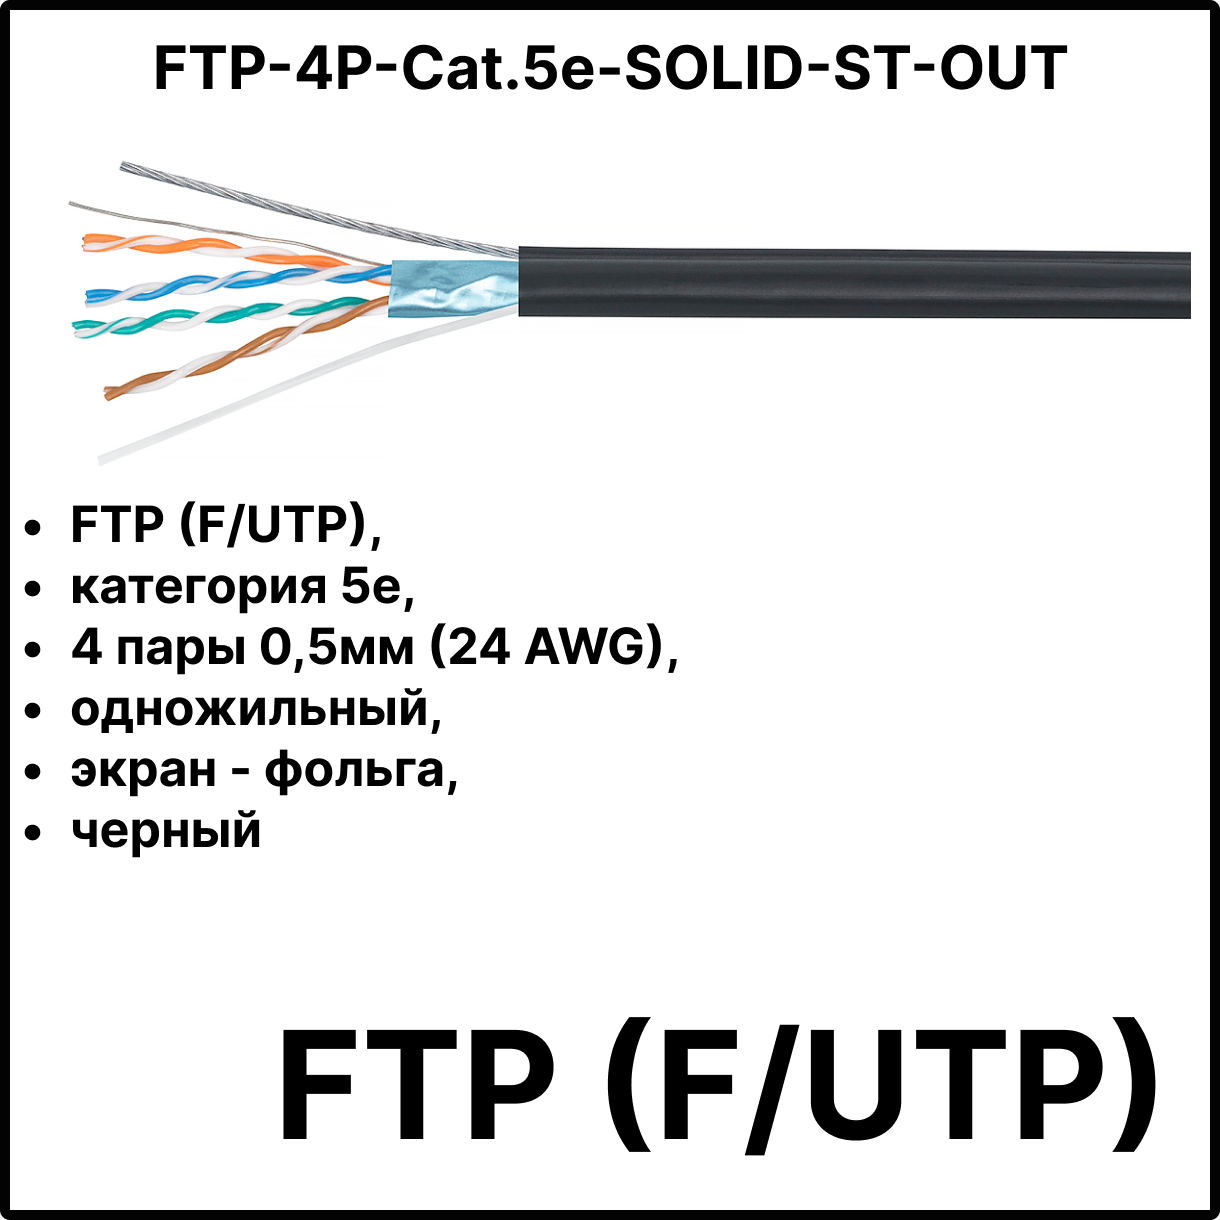 Cabeus FTP-4P-Cat.5e-SOLID-ST-OUT Кабель витая пара экранированная FTP (F/UTP), категория 5e, 4 пары 0,5мм (24 AWG), одножильный, экран - фольга, для внешней прокладки, с металлическим тросом, 305 м